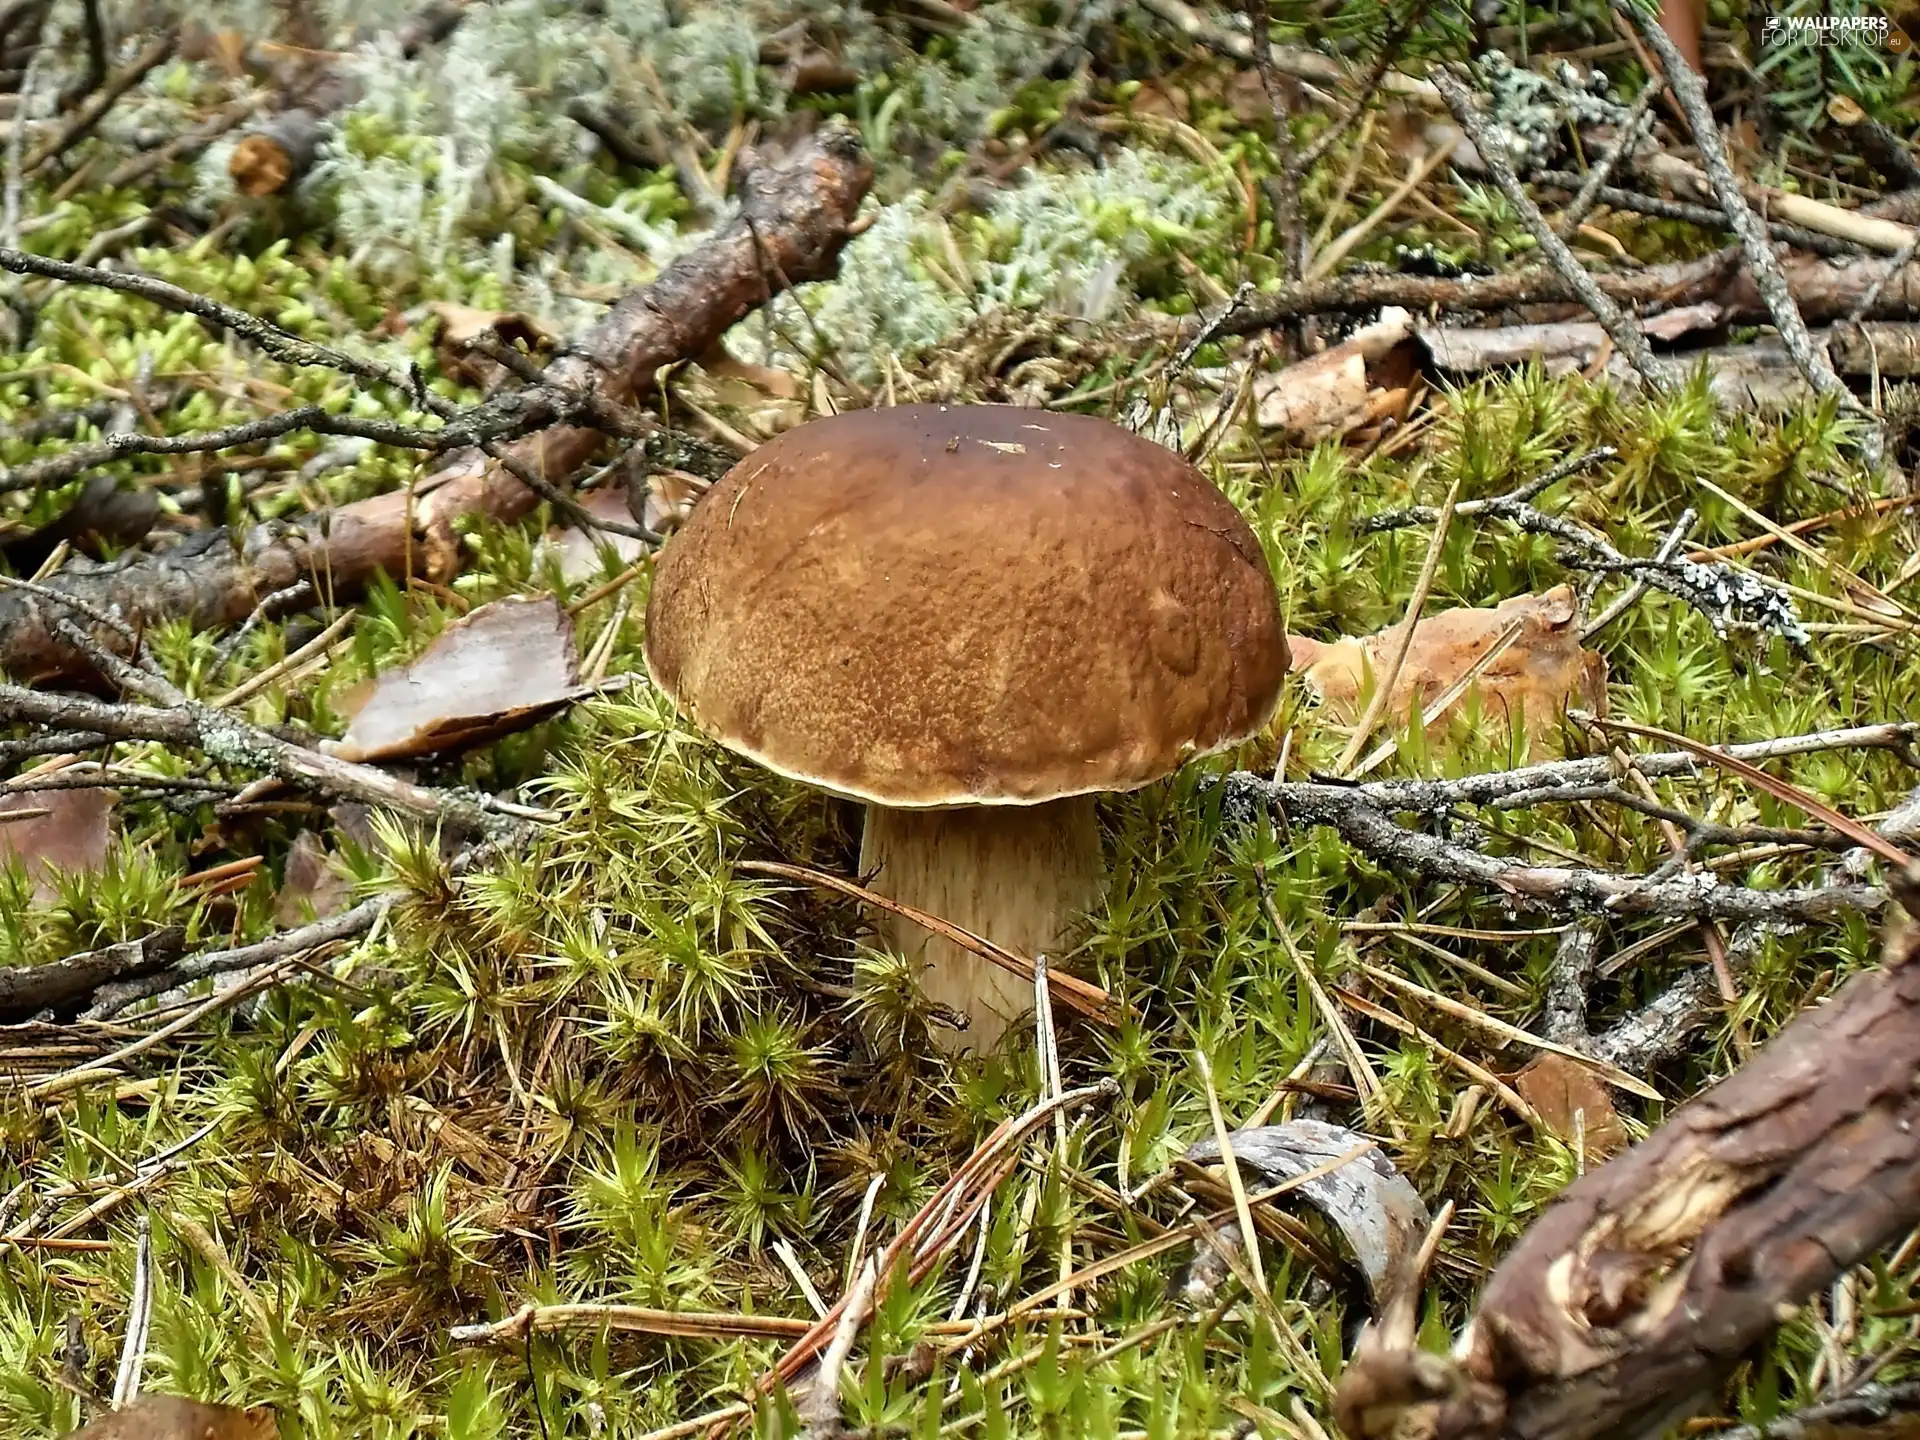 Real mushroom, boletus, forest, mushrooms, Kociewie